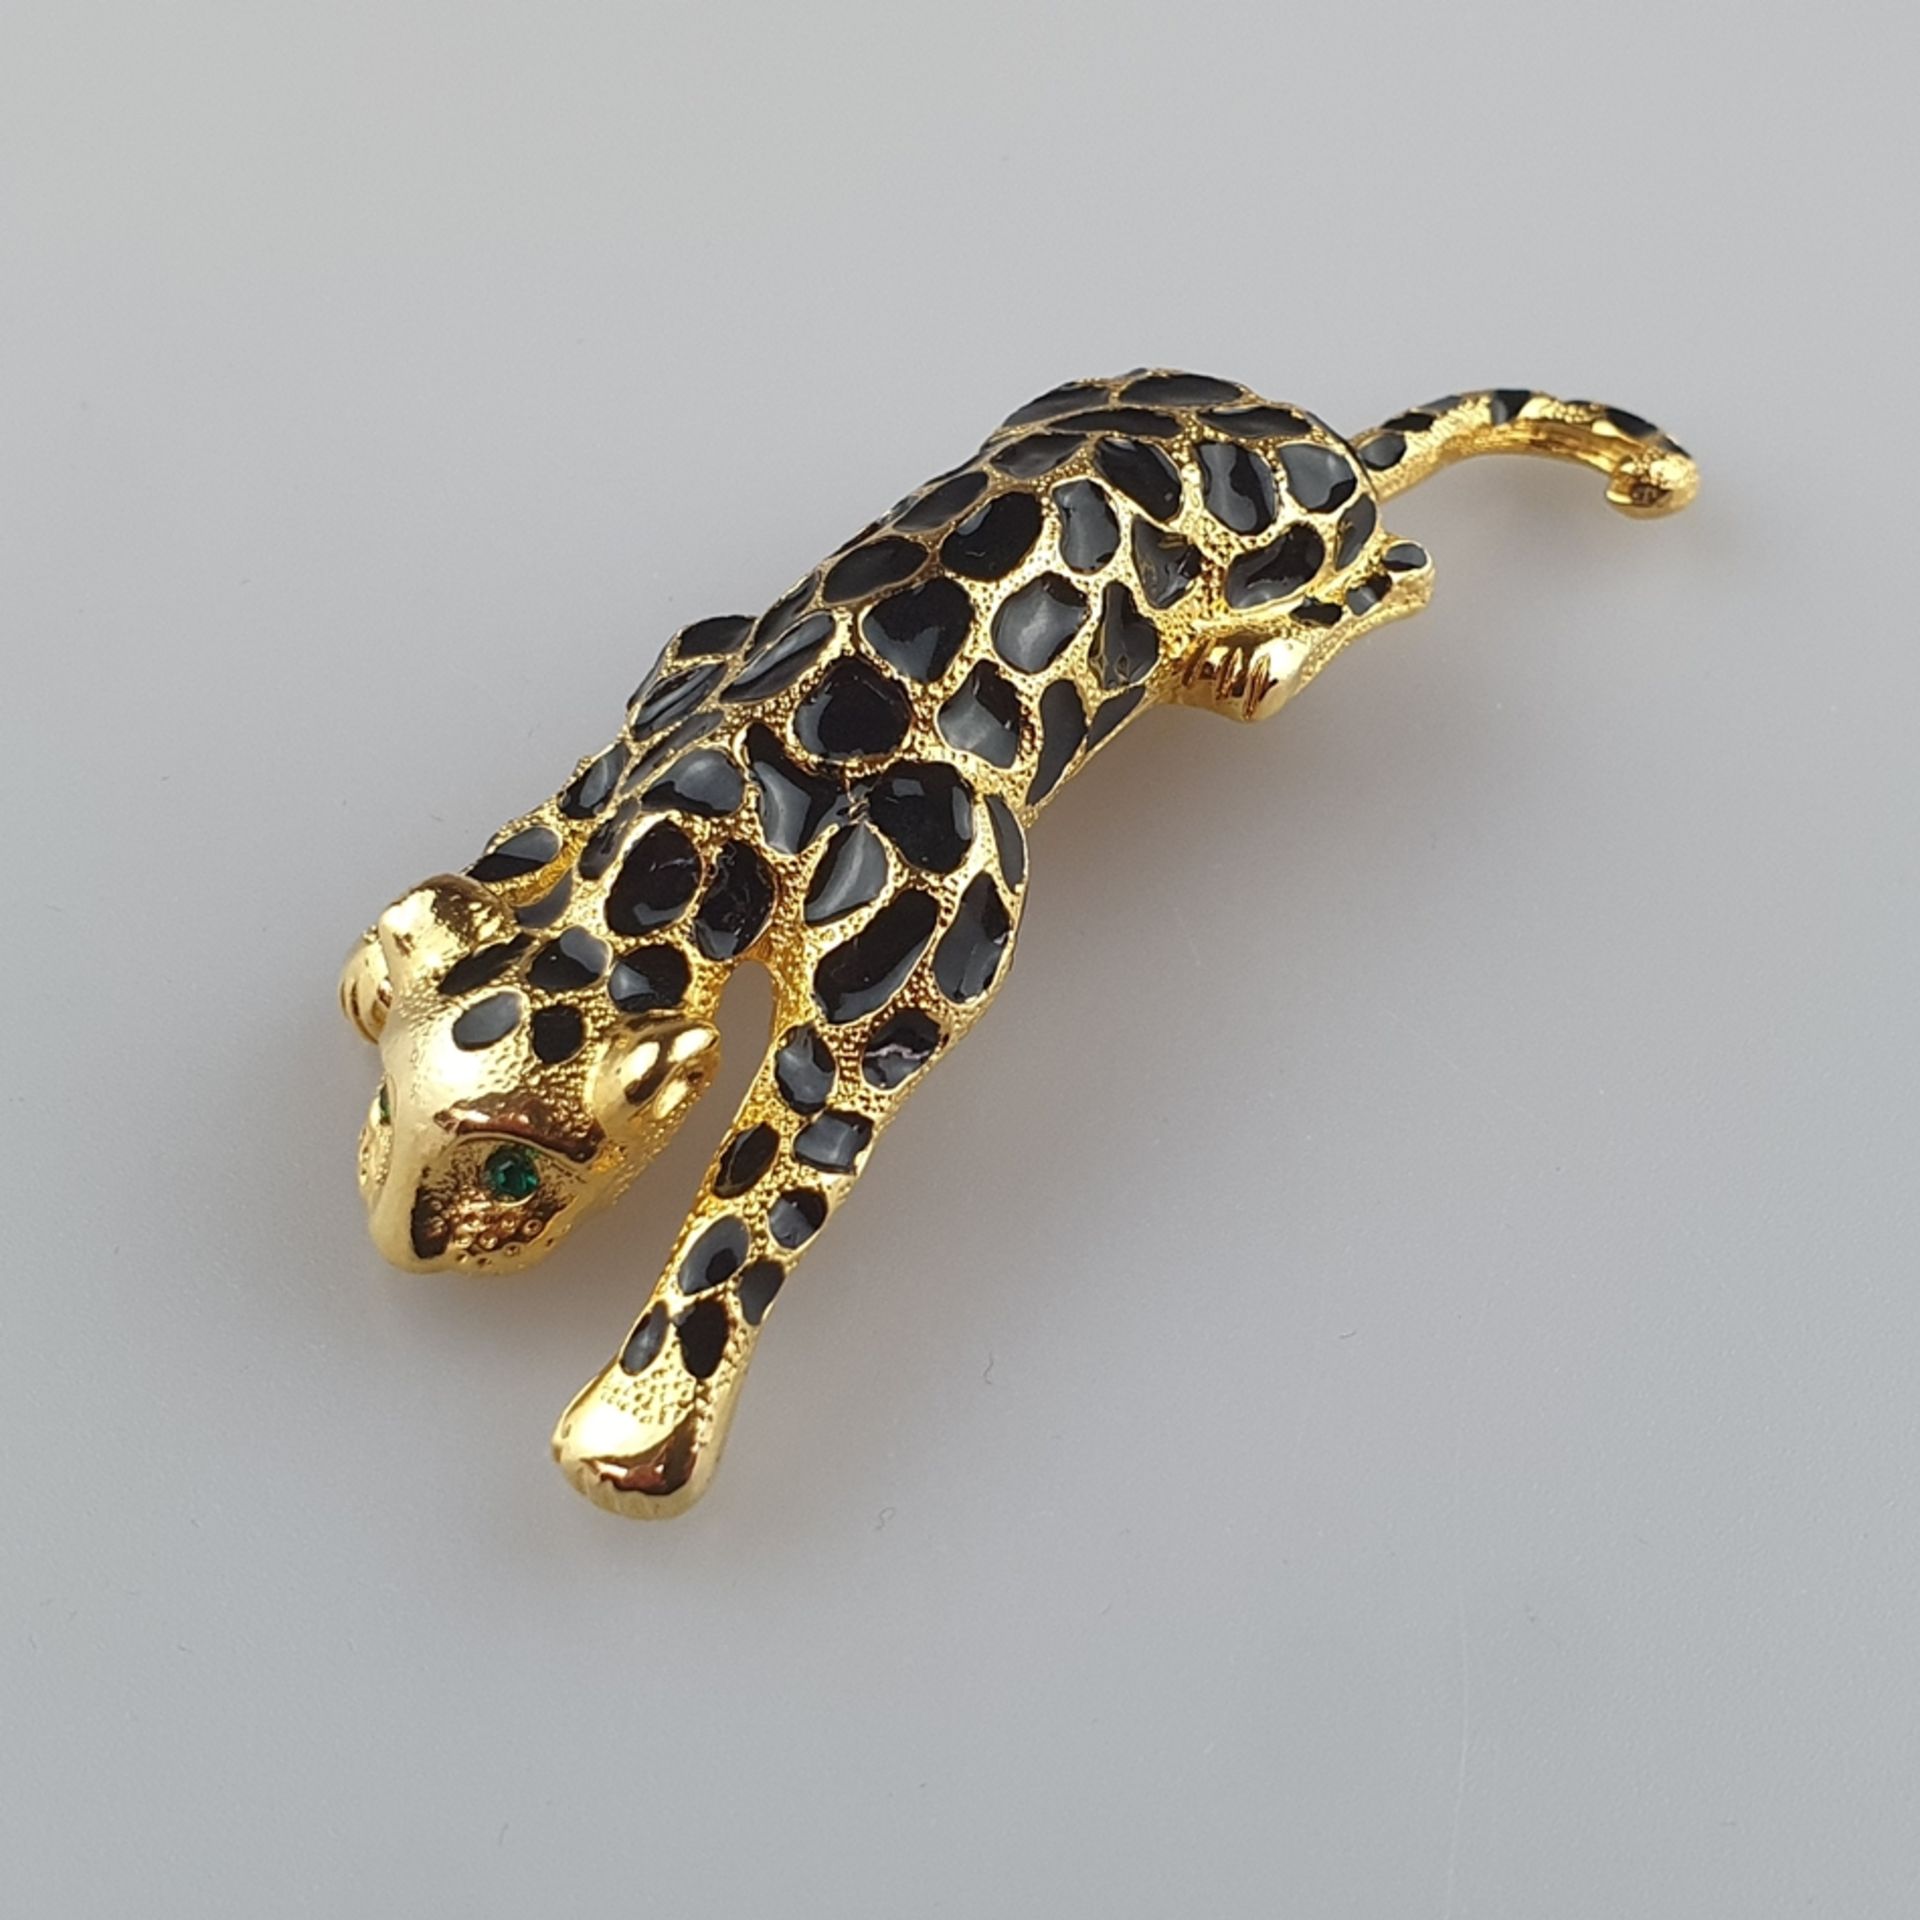 Schwere Vintage-Brosche - in Form eines Panthers mit scharniertem Schwanz, Metall vergoldet mit sch